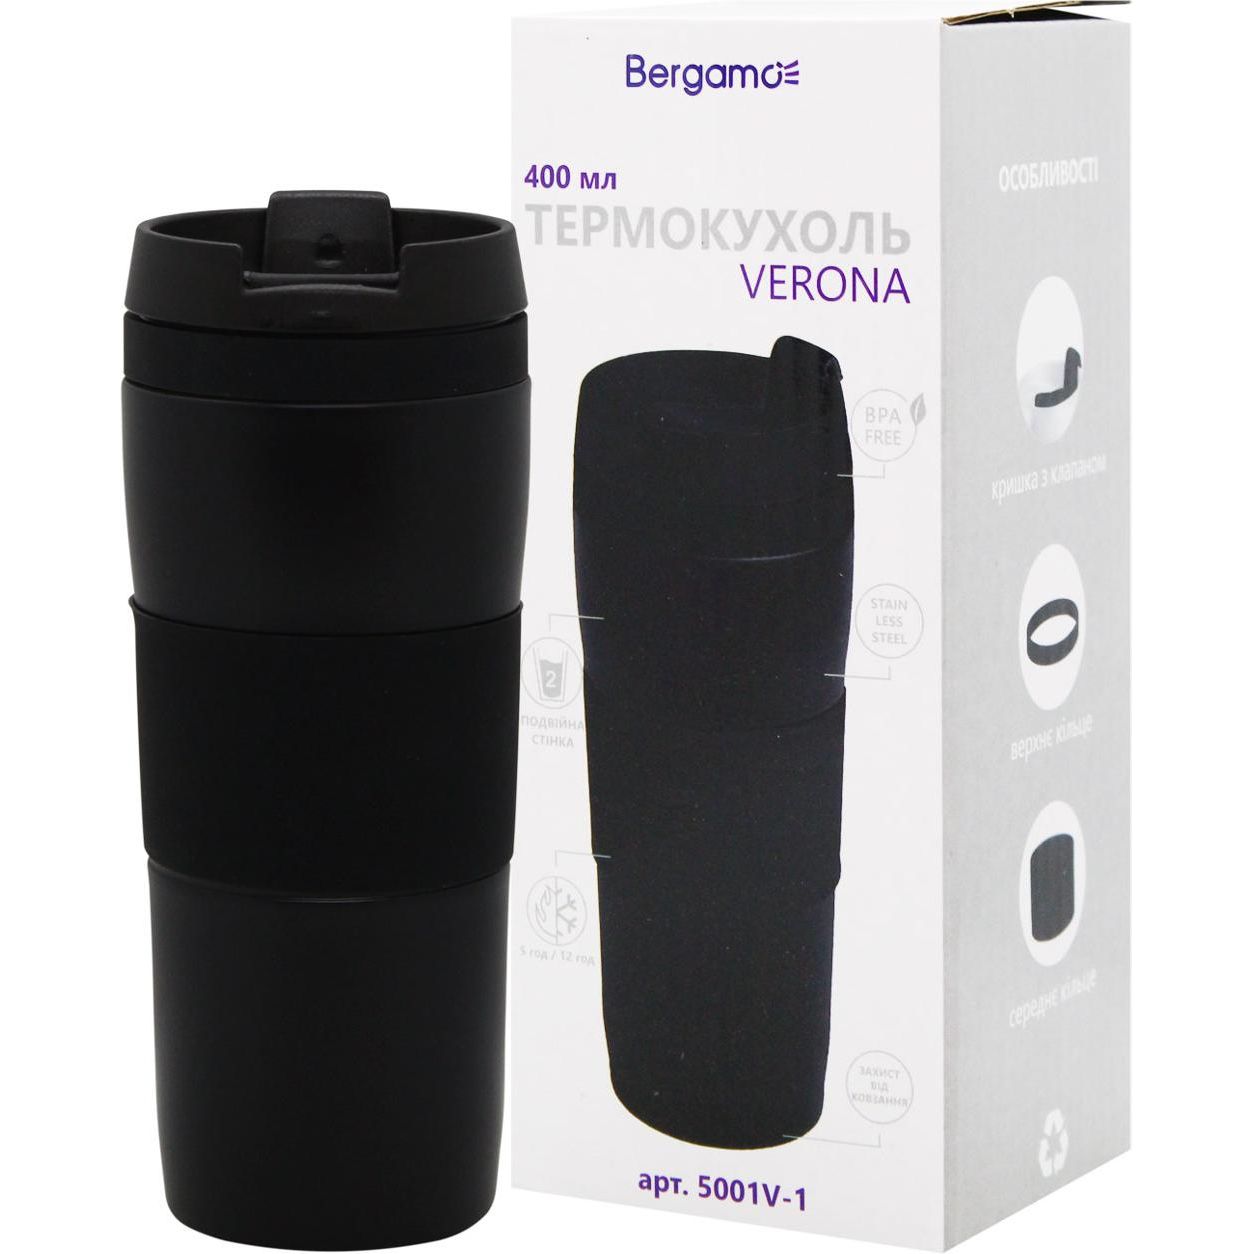 Термокружка Bergamo Verona 400 мл черная (5001V-1) - фото 2